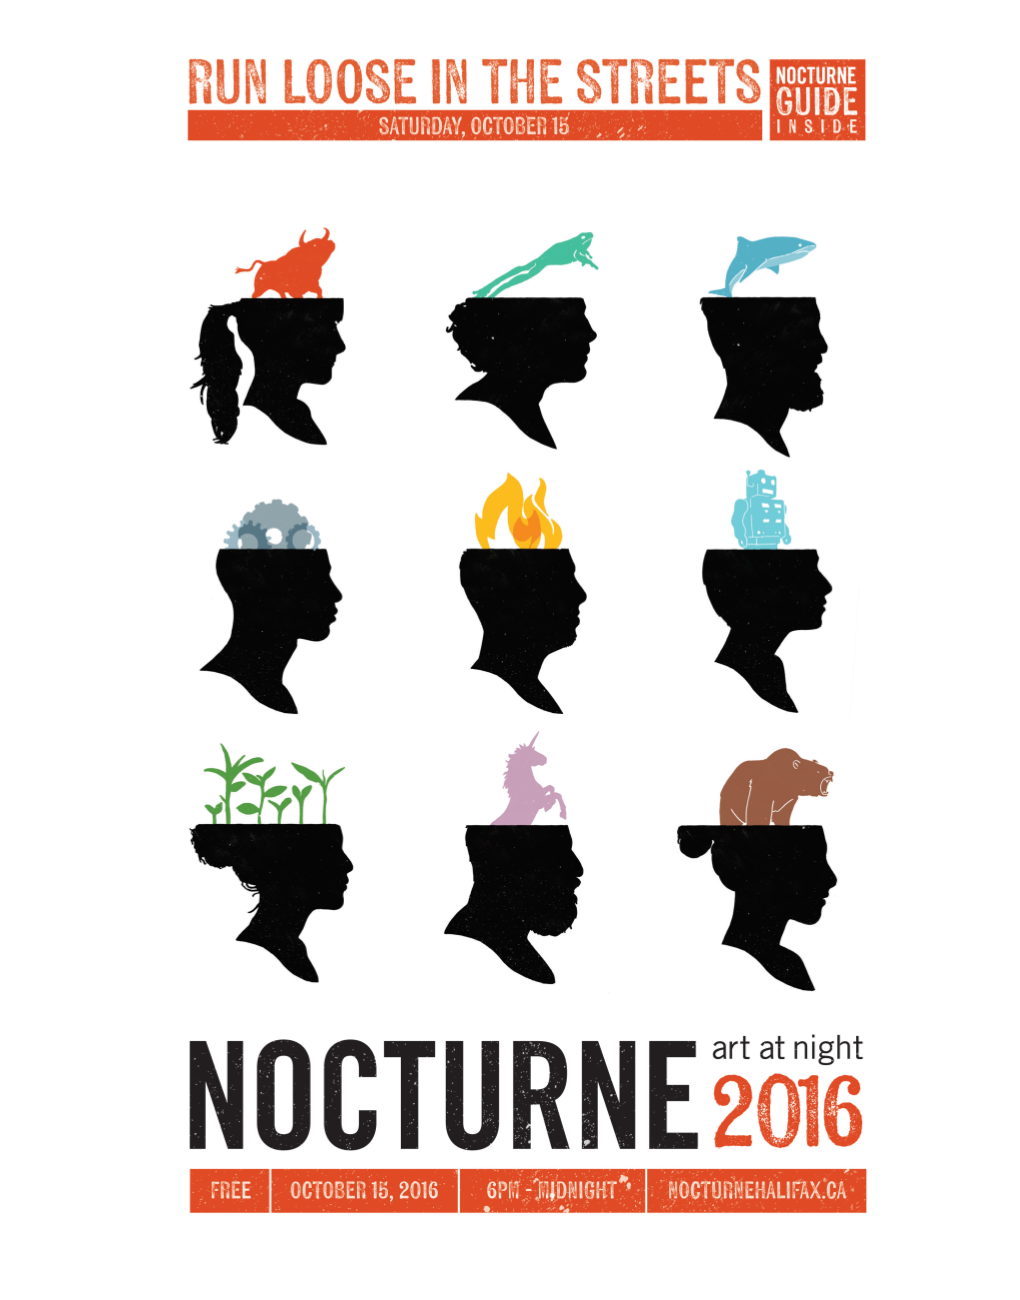 Nocturne 2016 Guide